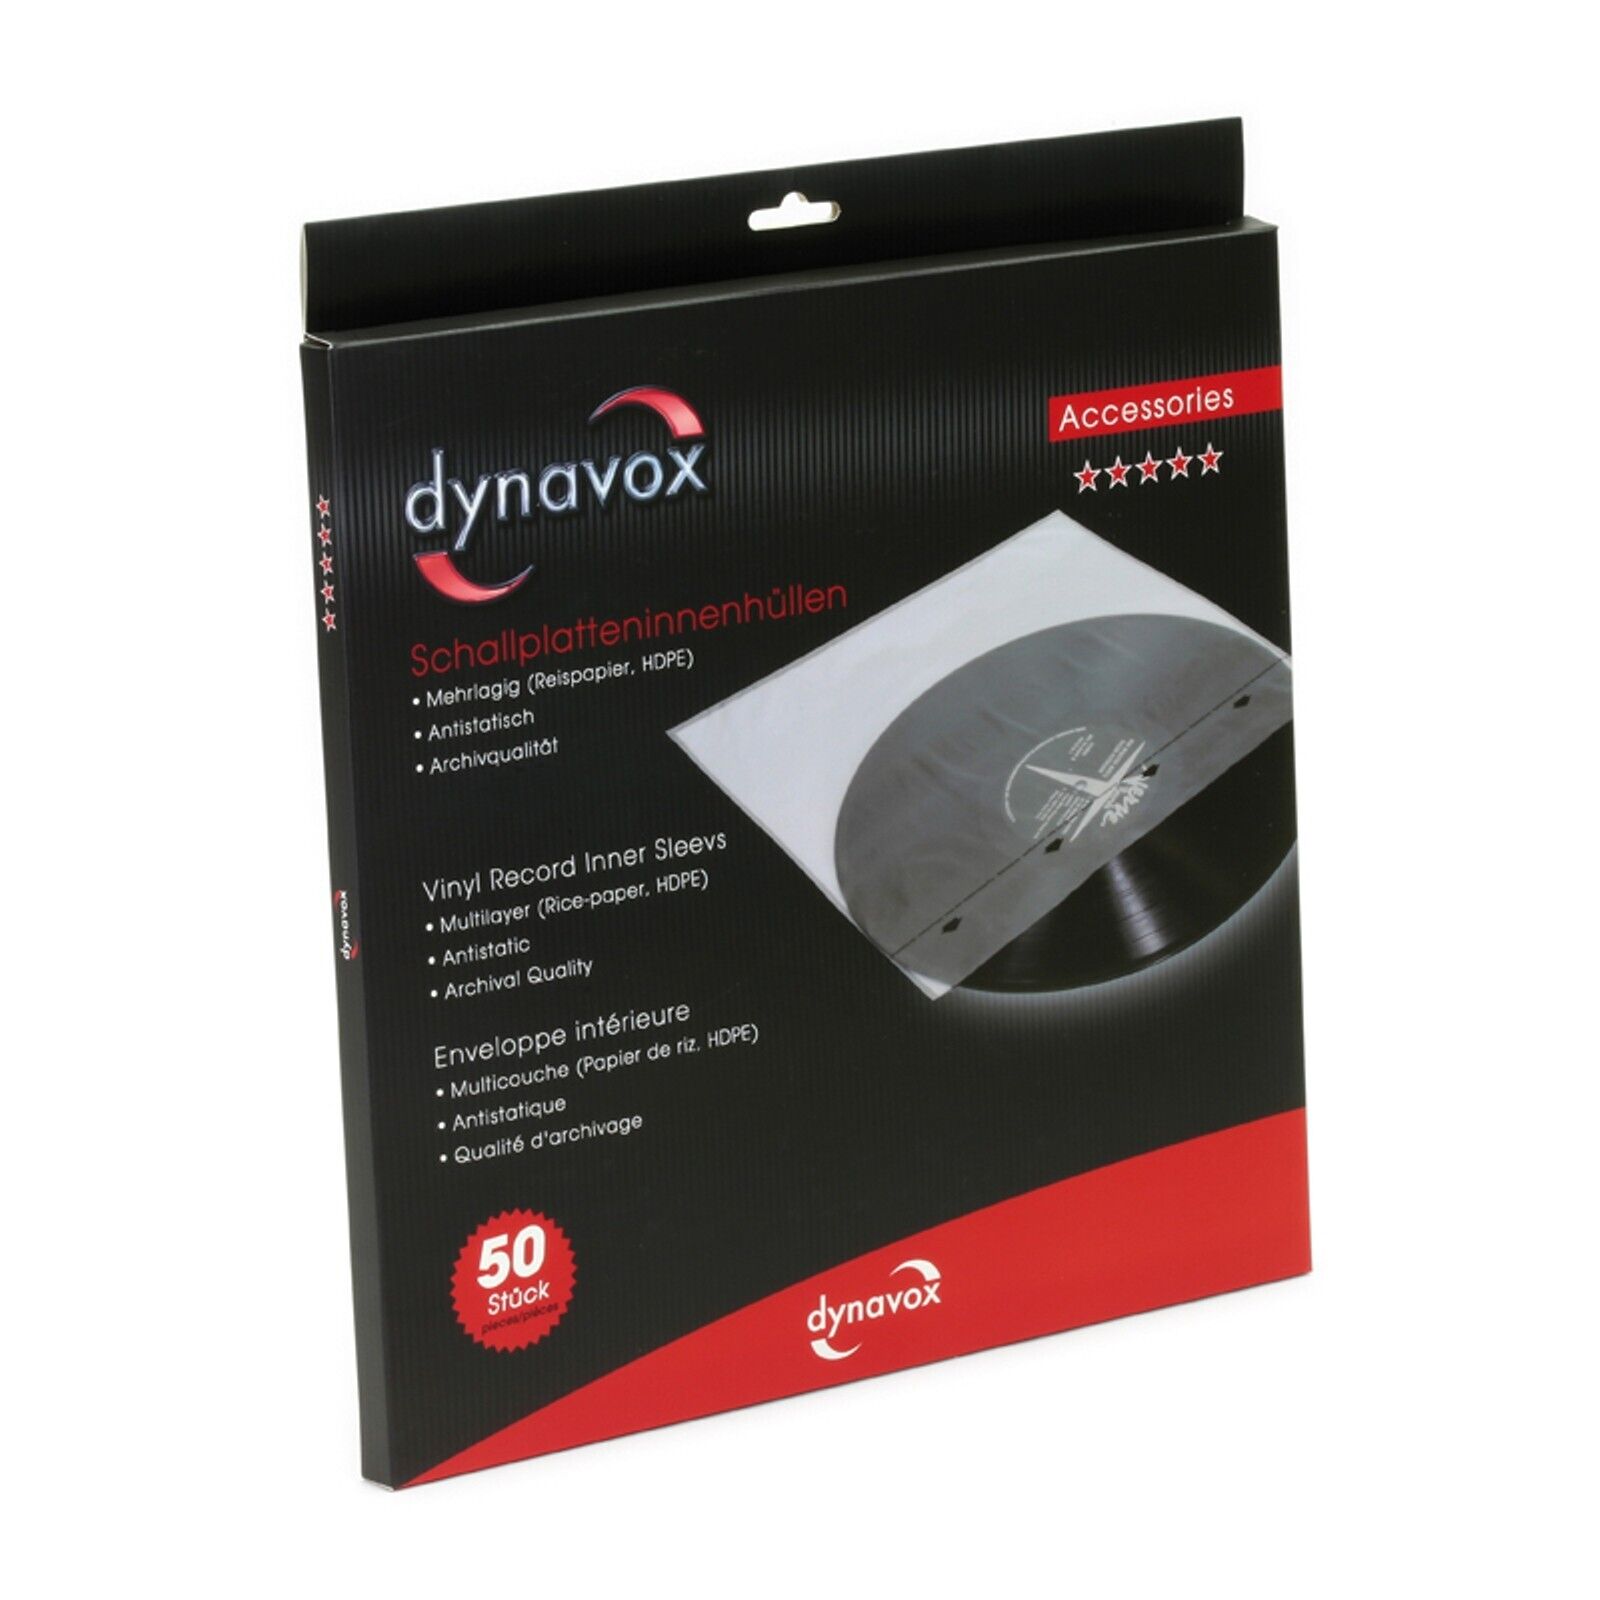 Dynavox Schallplatten-Innenhüllen 50 Stück antistatisch